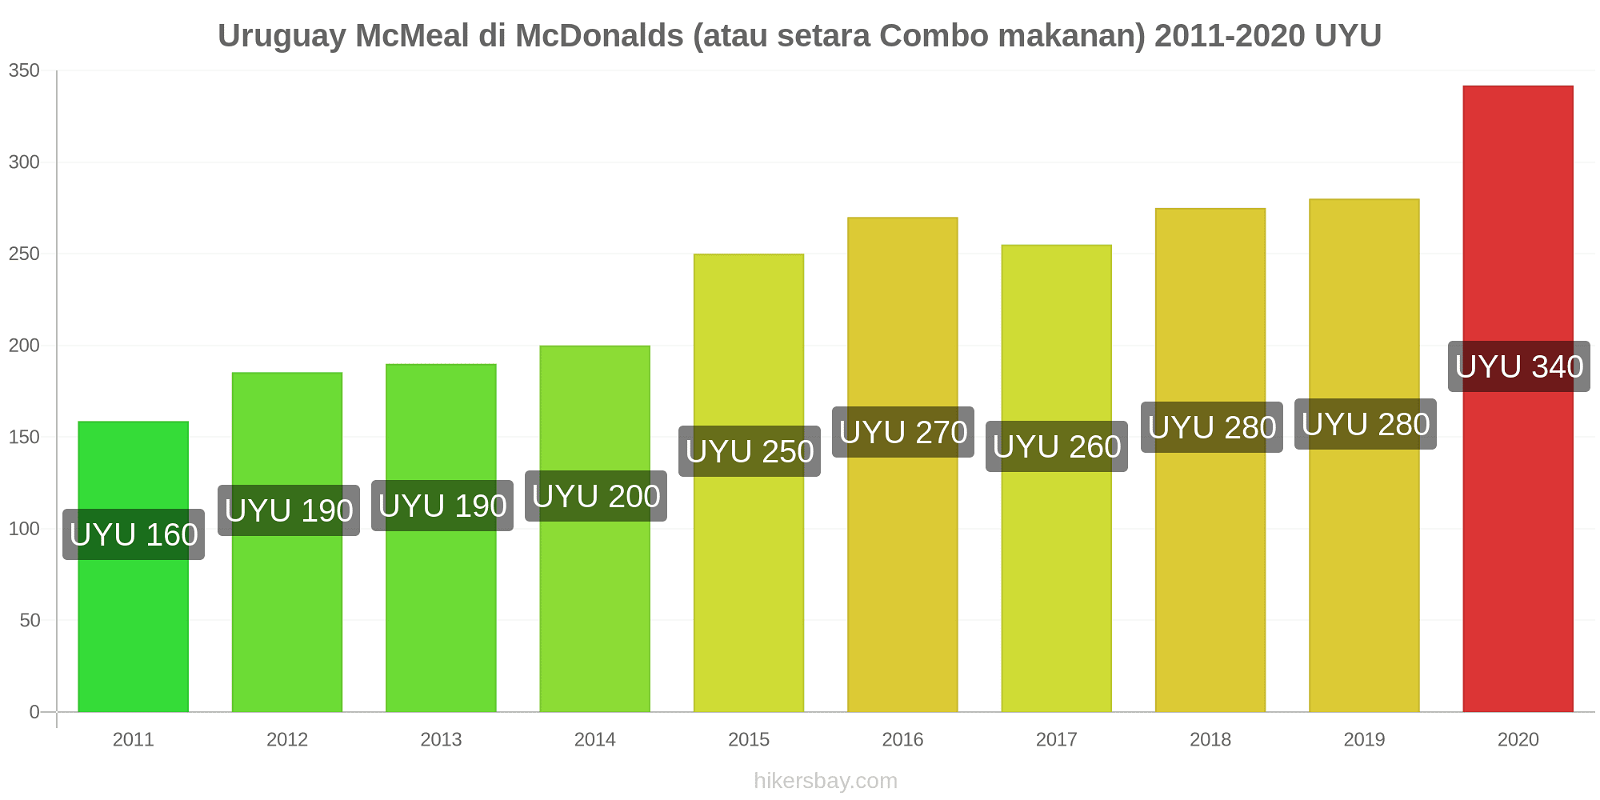 Uruguay perubahan harga McMeal di McDonalds (atau setara Combo makanan) hikersbay.com